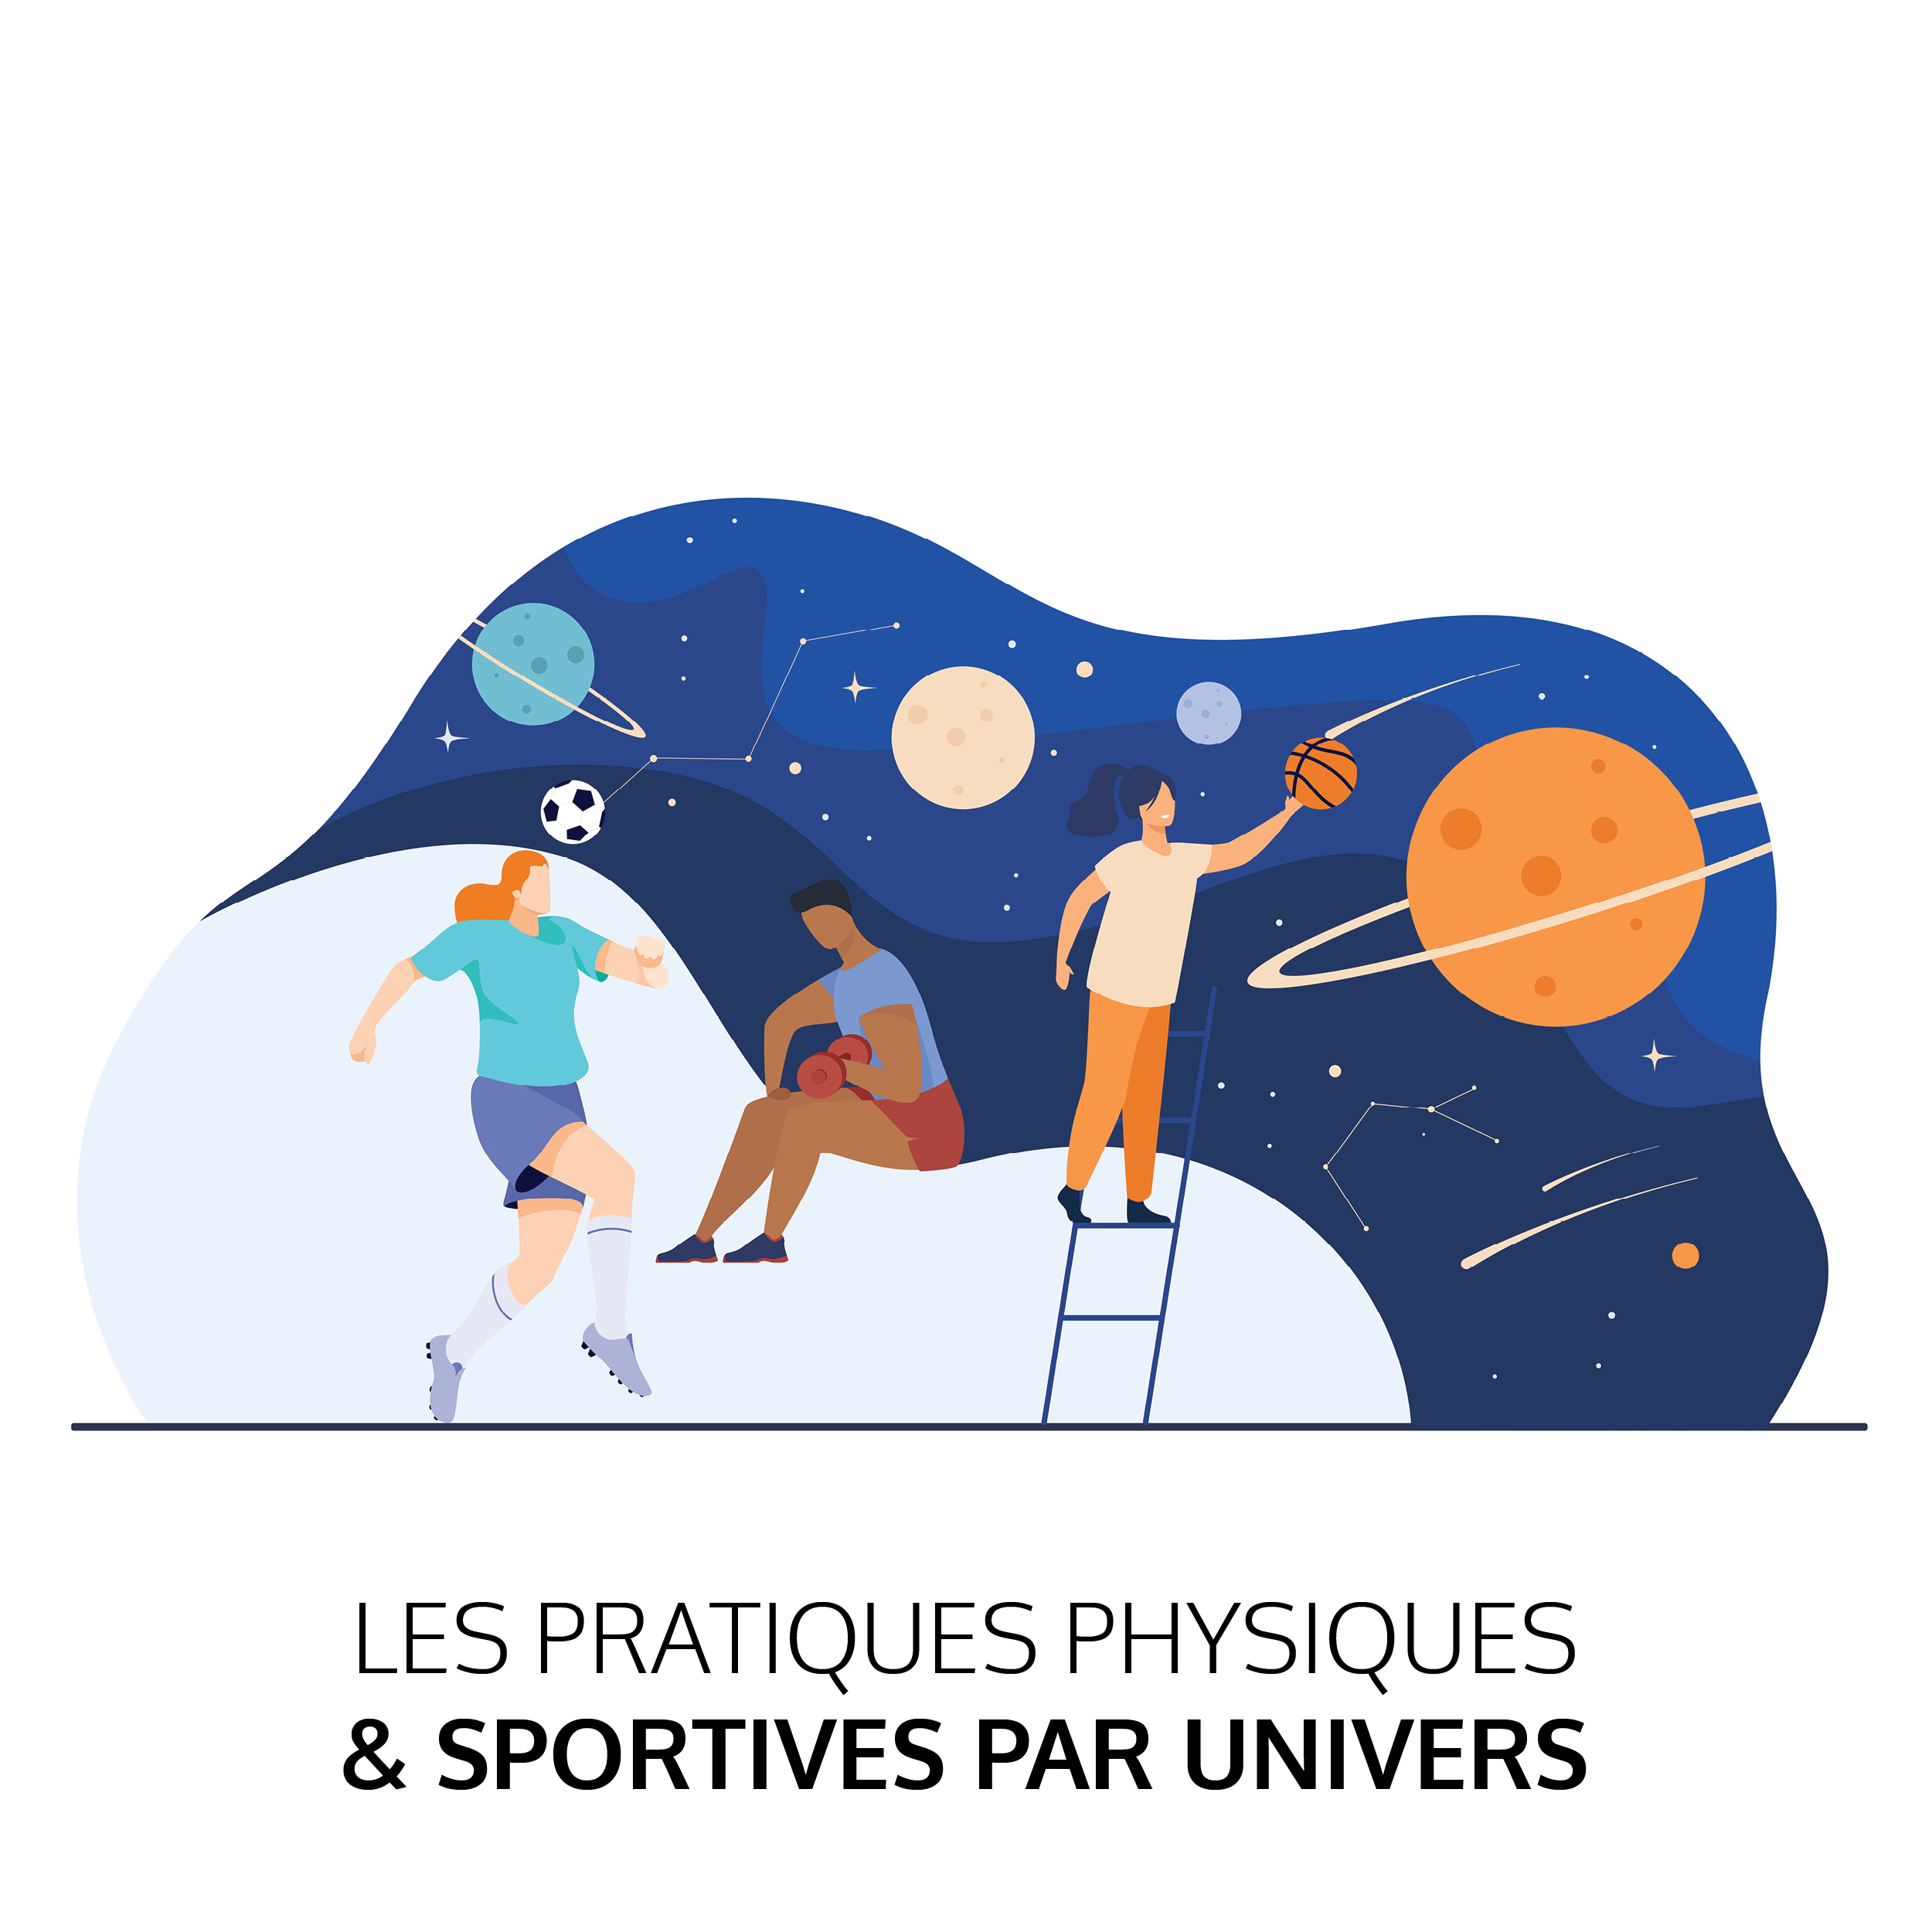 Les pratiques physiques & sportives par univers